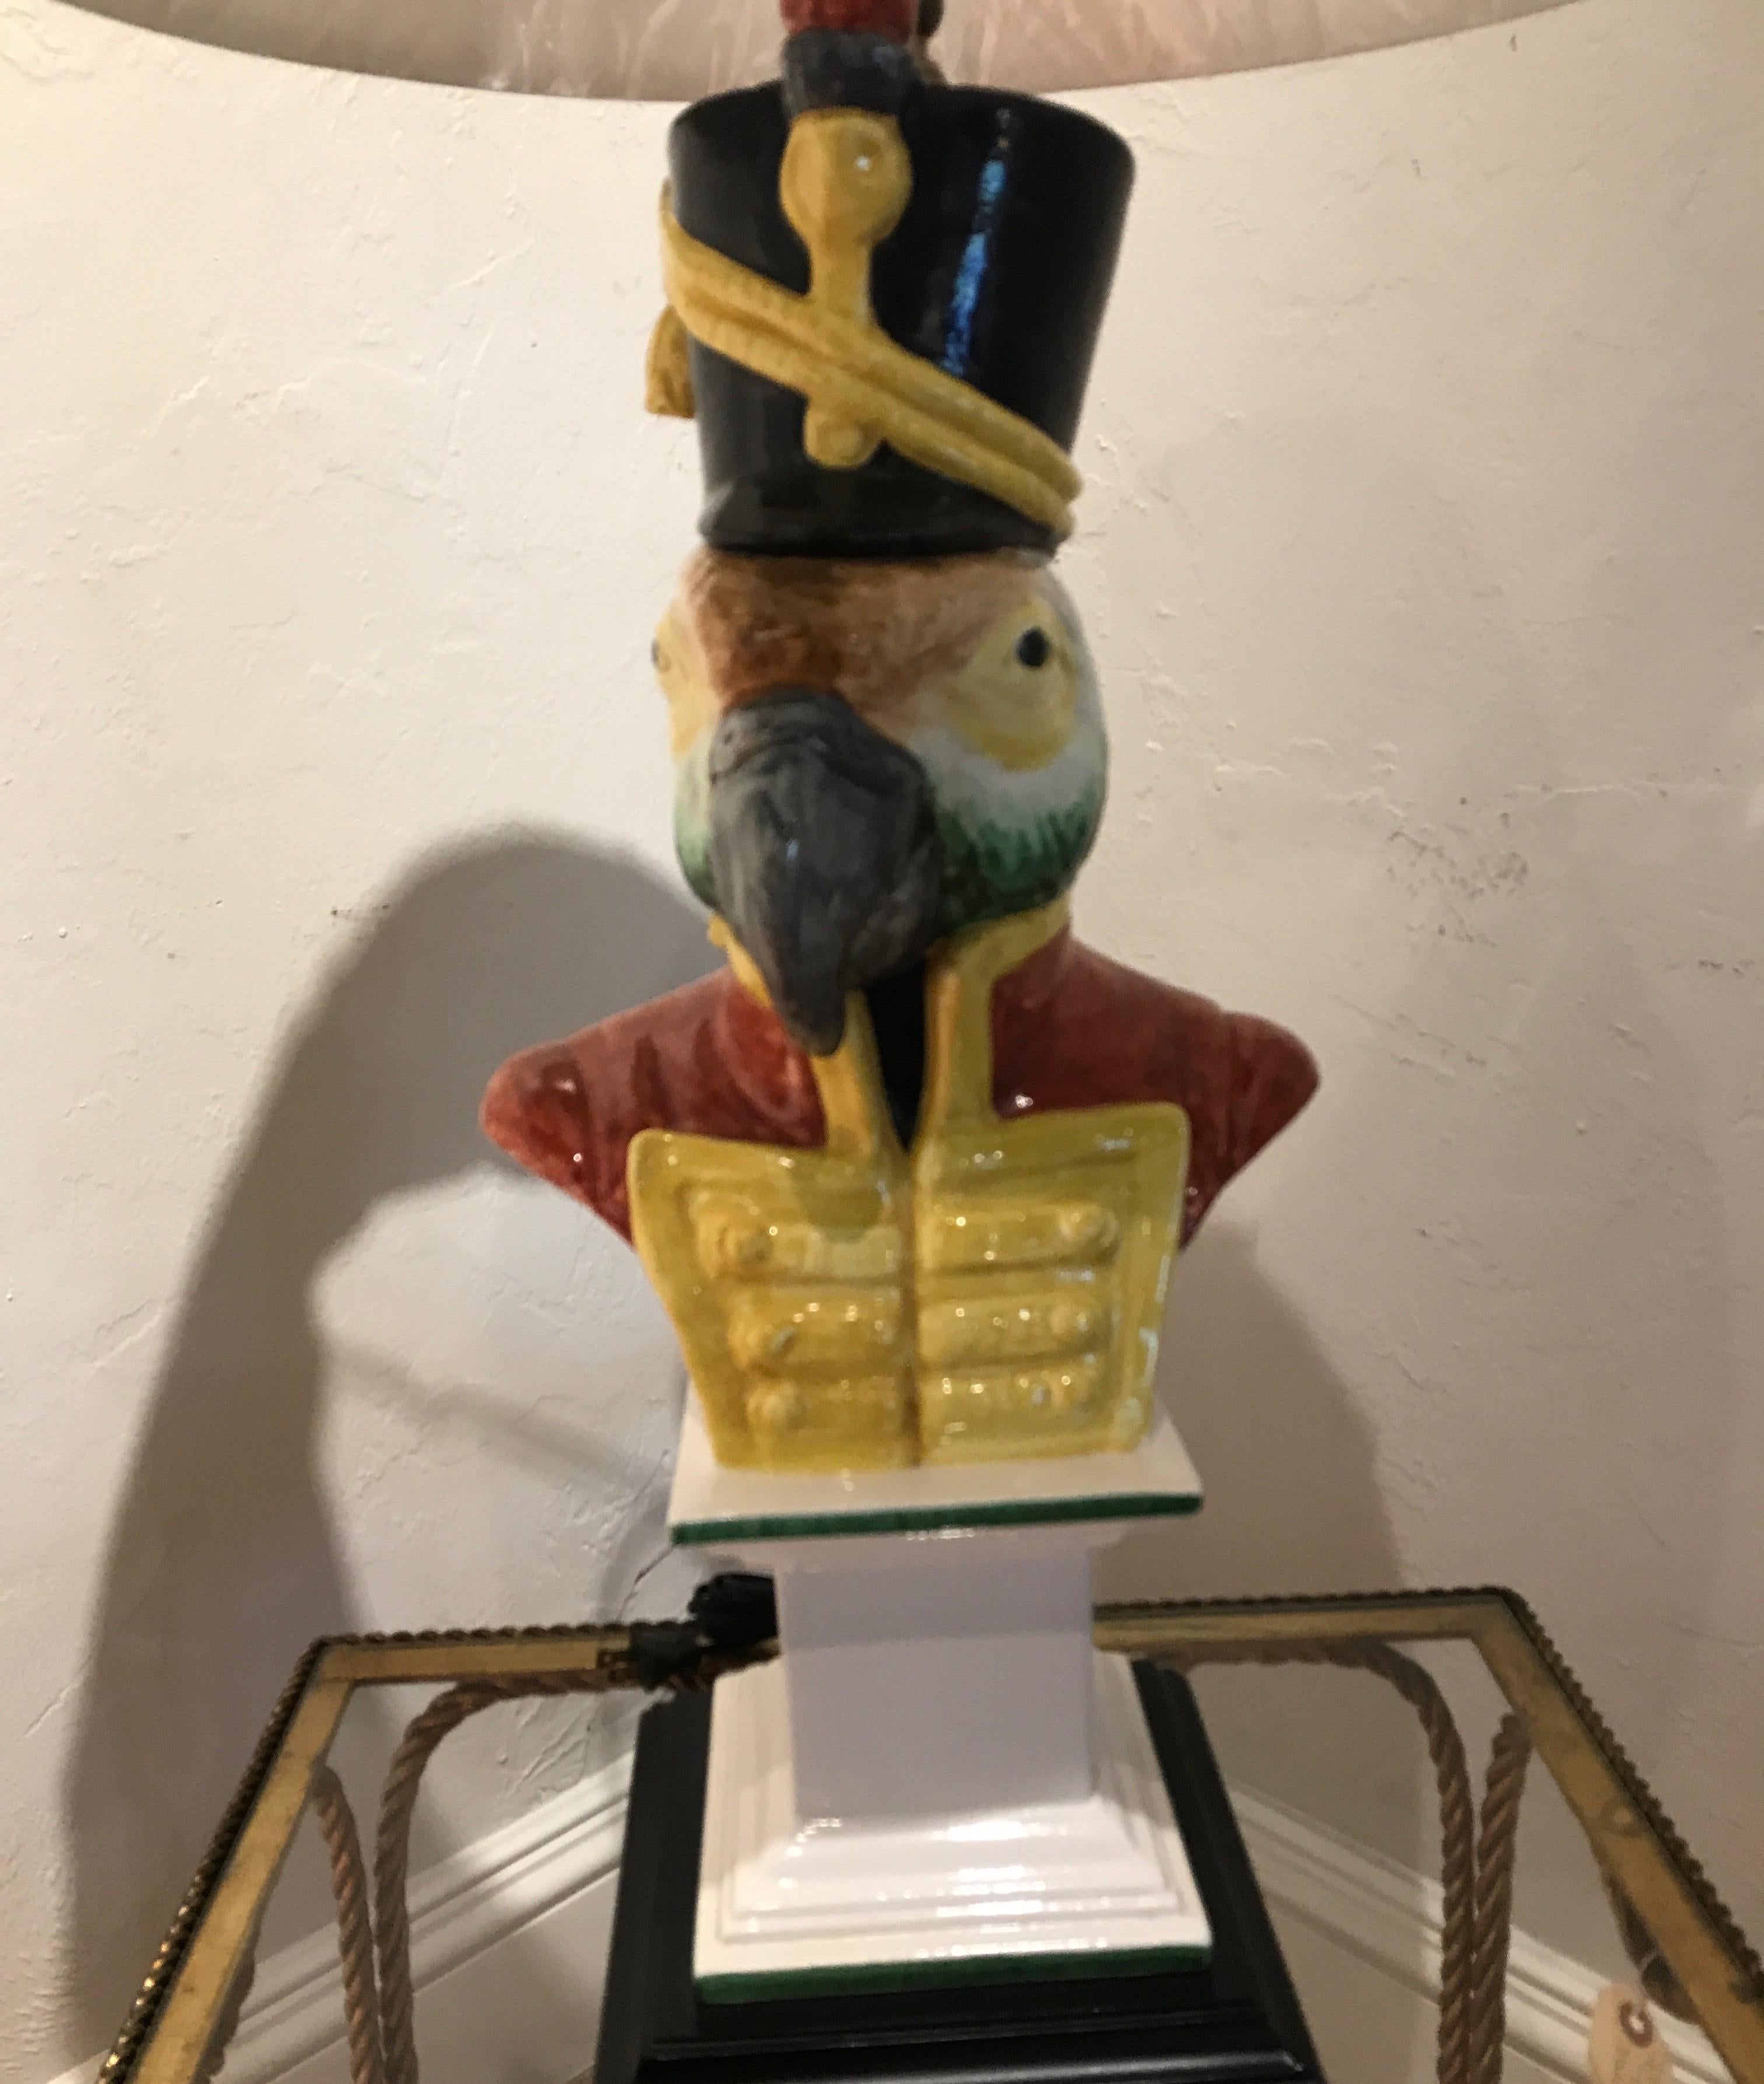 antique parrot lamp